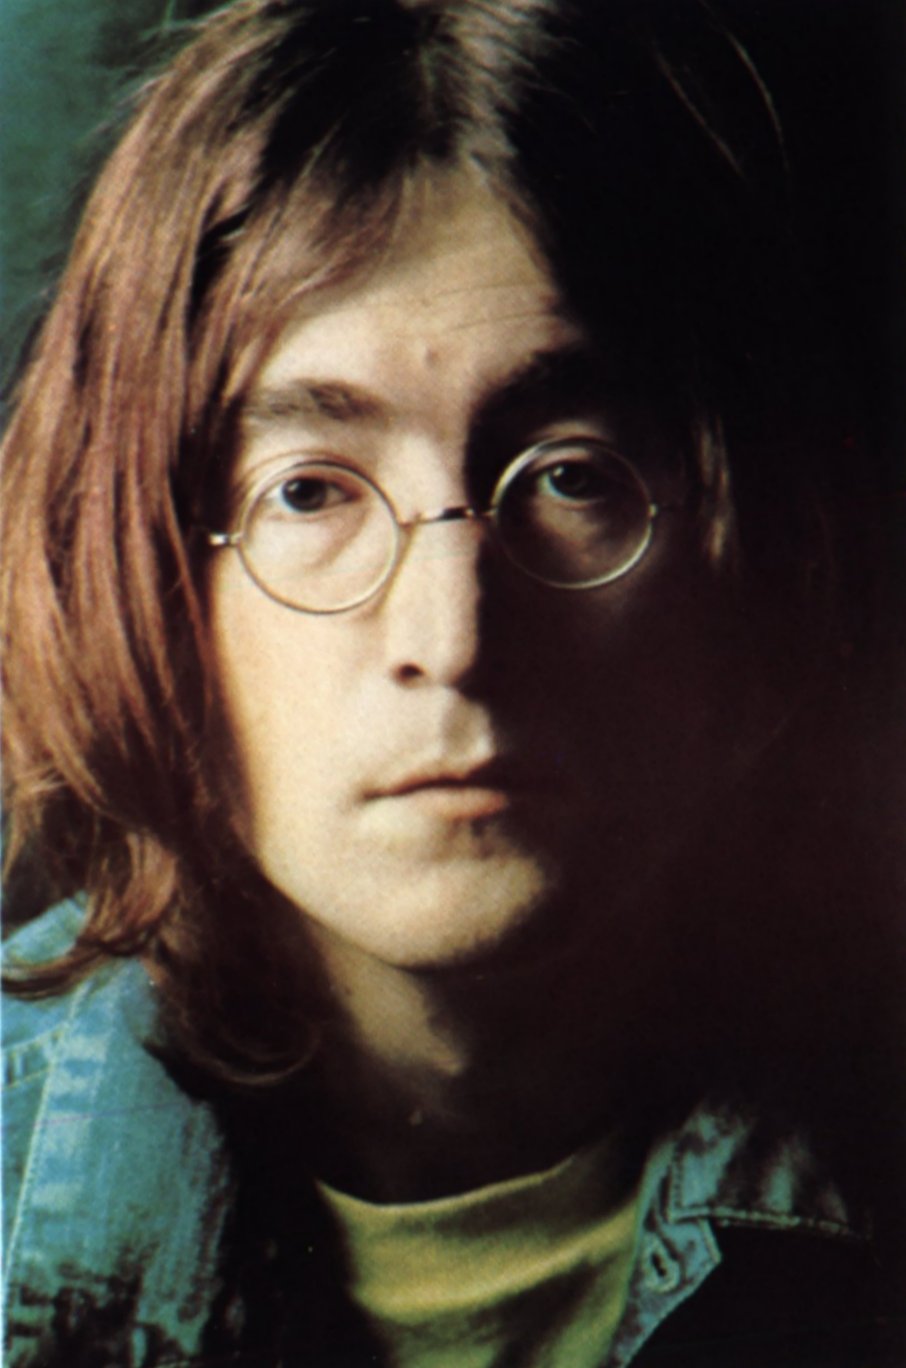 John Lennon Akan Dikloning?